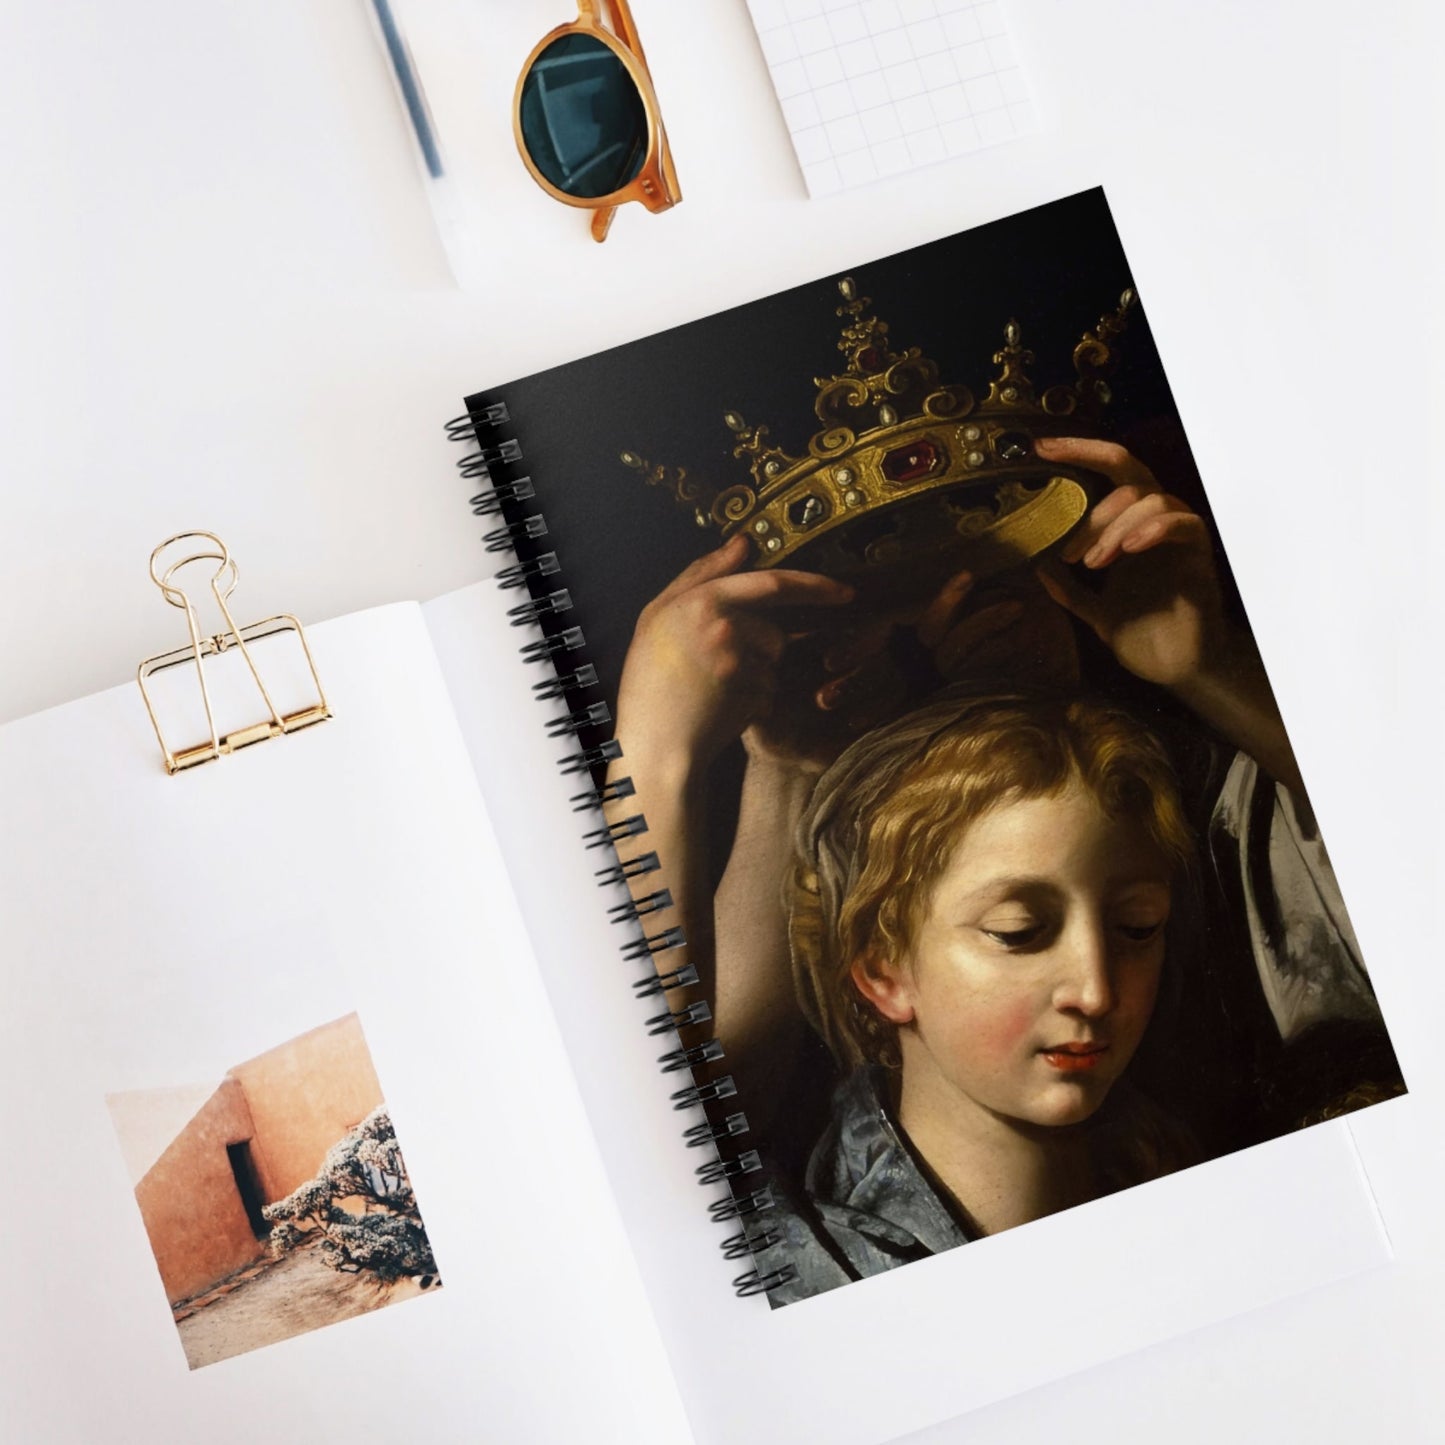 Renaissance Queen Spiral Notebook Displayed on Desk